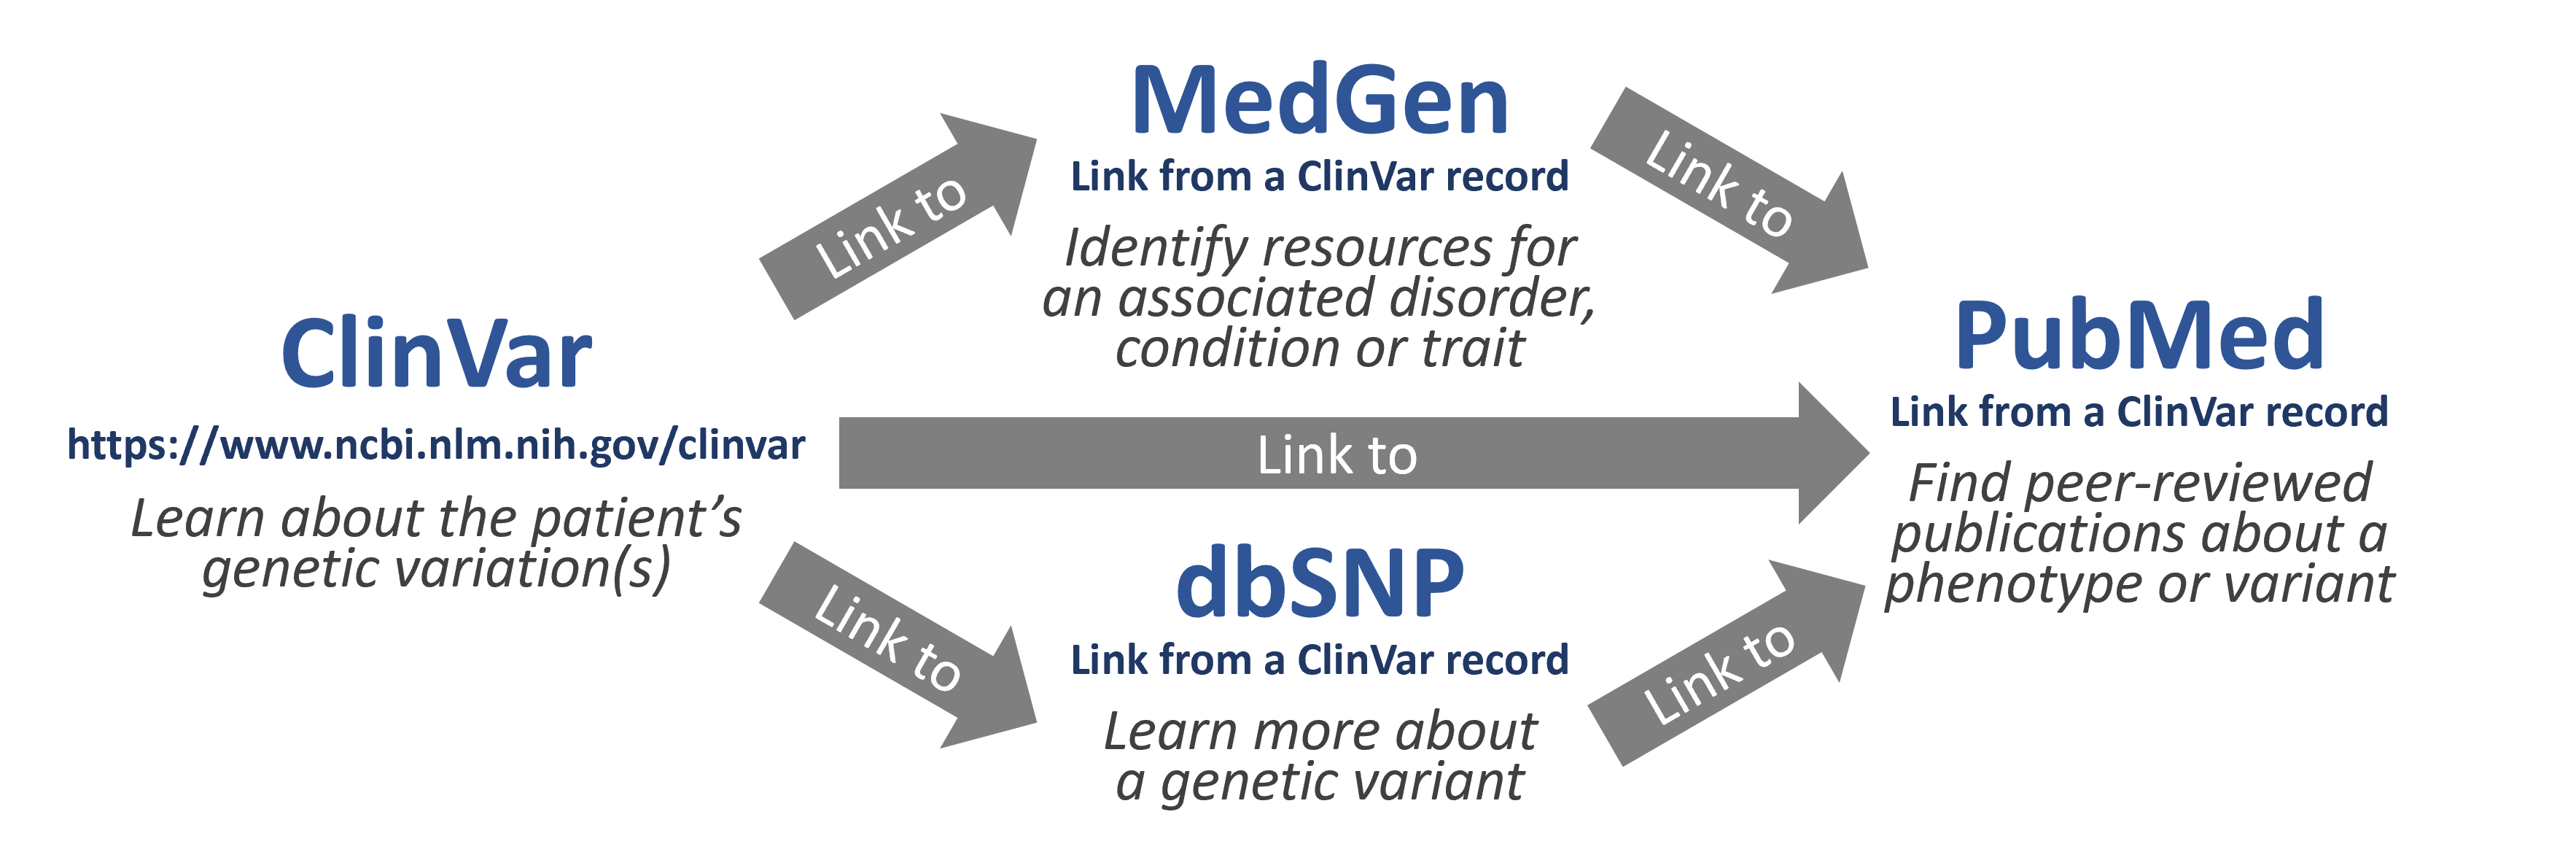 Workflow for Lightning Round steps: ClinVar, Medgen, PubMed or dbSNP